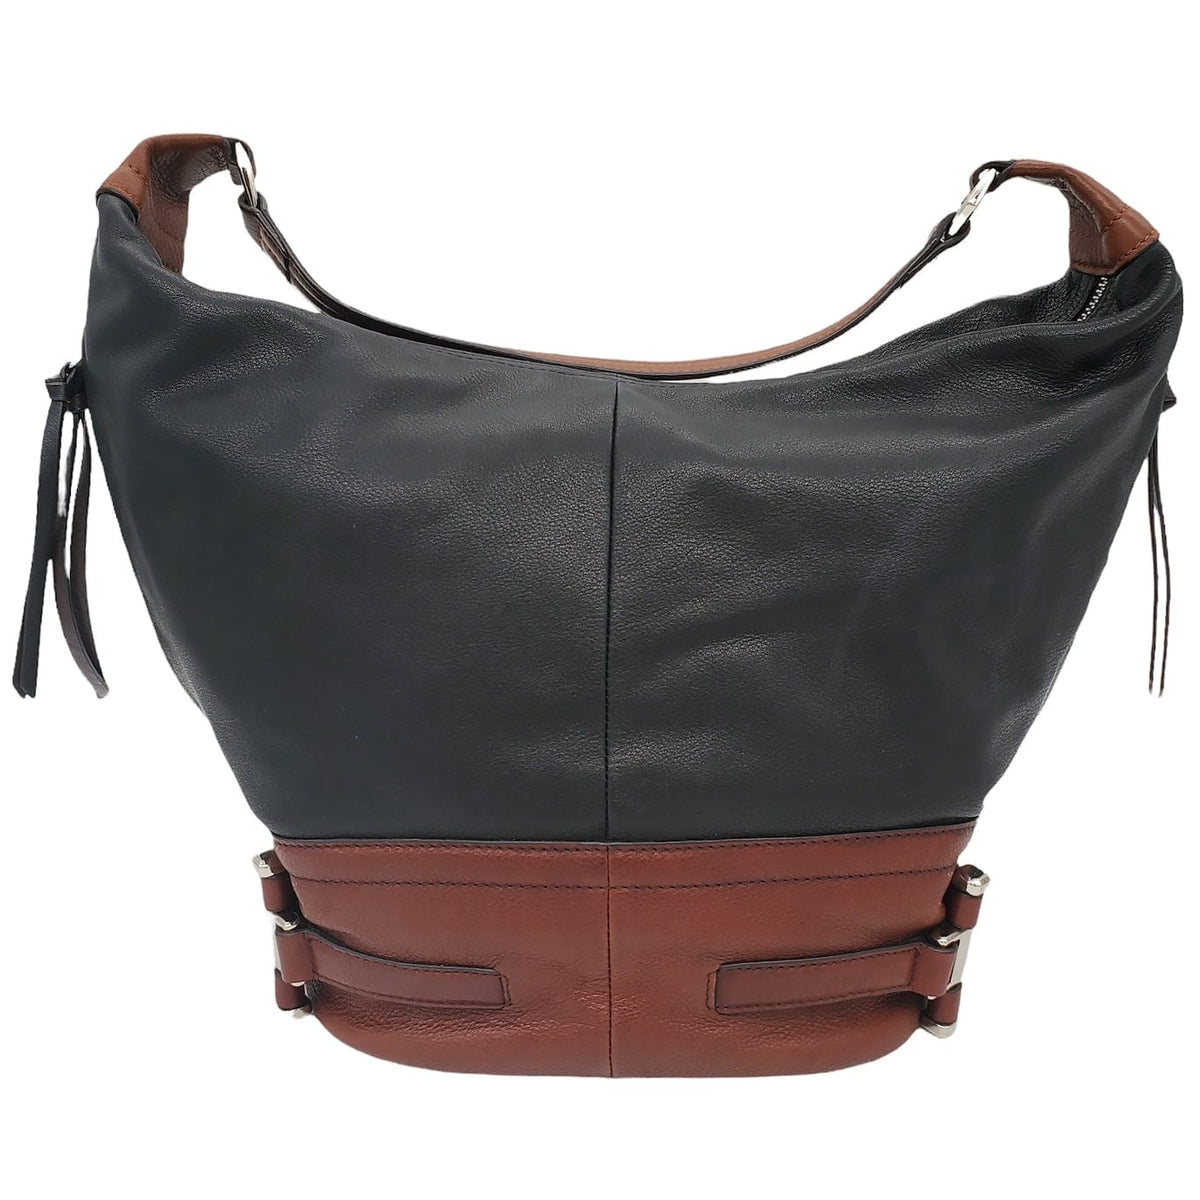 B. Makowsky Leather Shoulder Bag